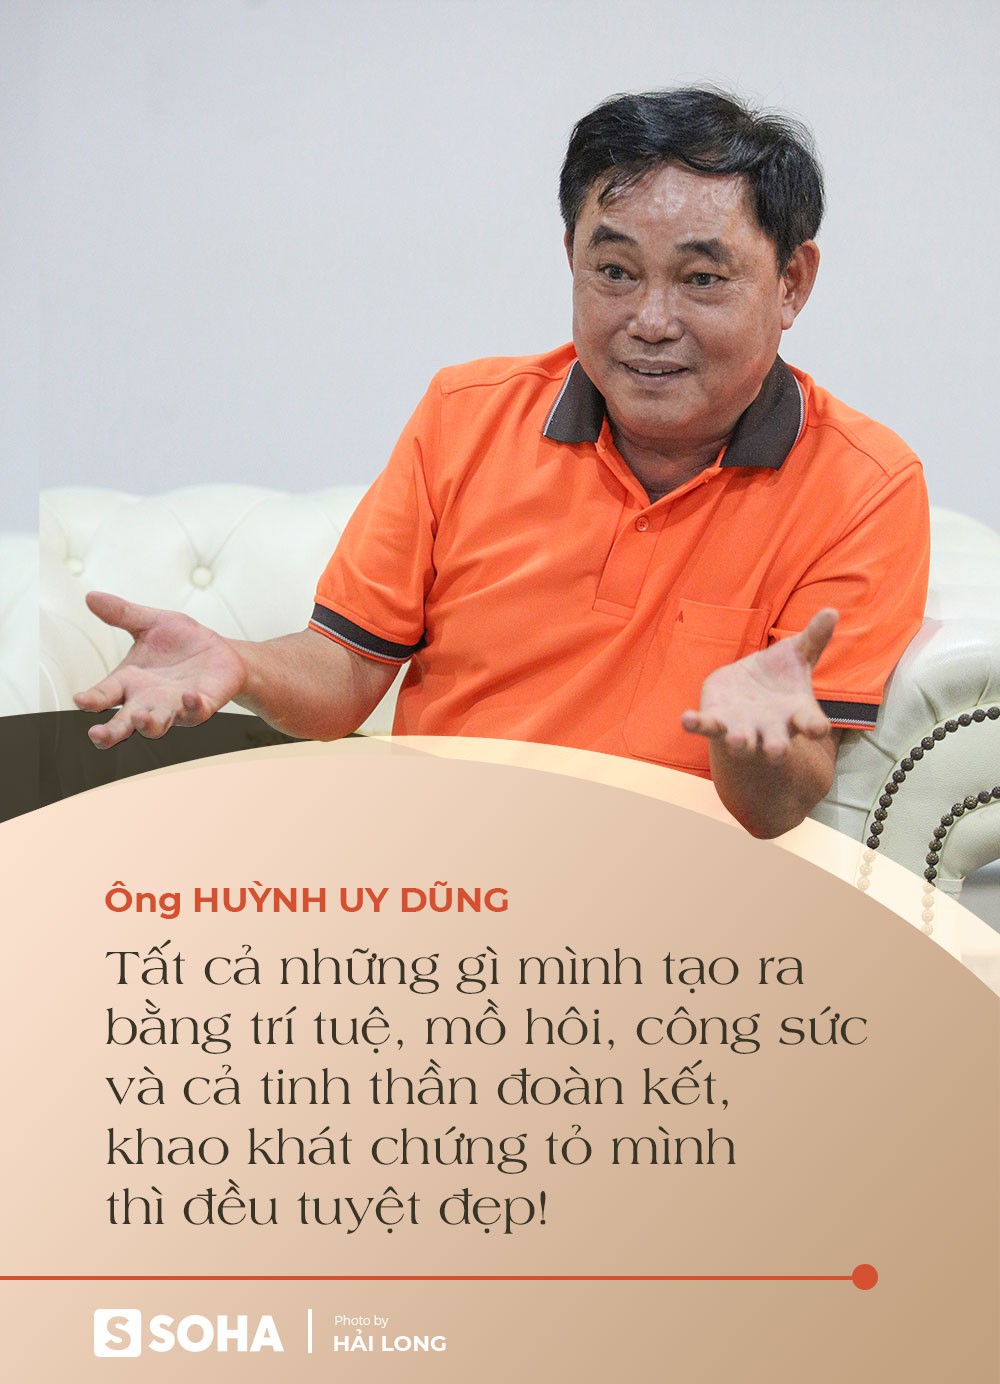 Ông Huỳnh Uy Dũng: Chuyện ông Yên đã có bà xã xử lý, 3 tháng nay tôi ở lại nhà máy, ngày có khi chỉ ăn 1 ổ bánh mì làm tới 12h đêm - Ảnh 4.